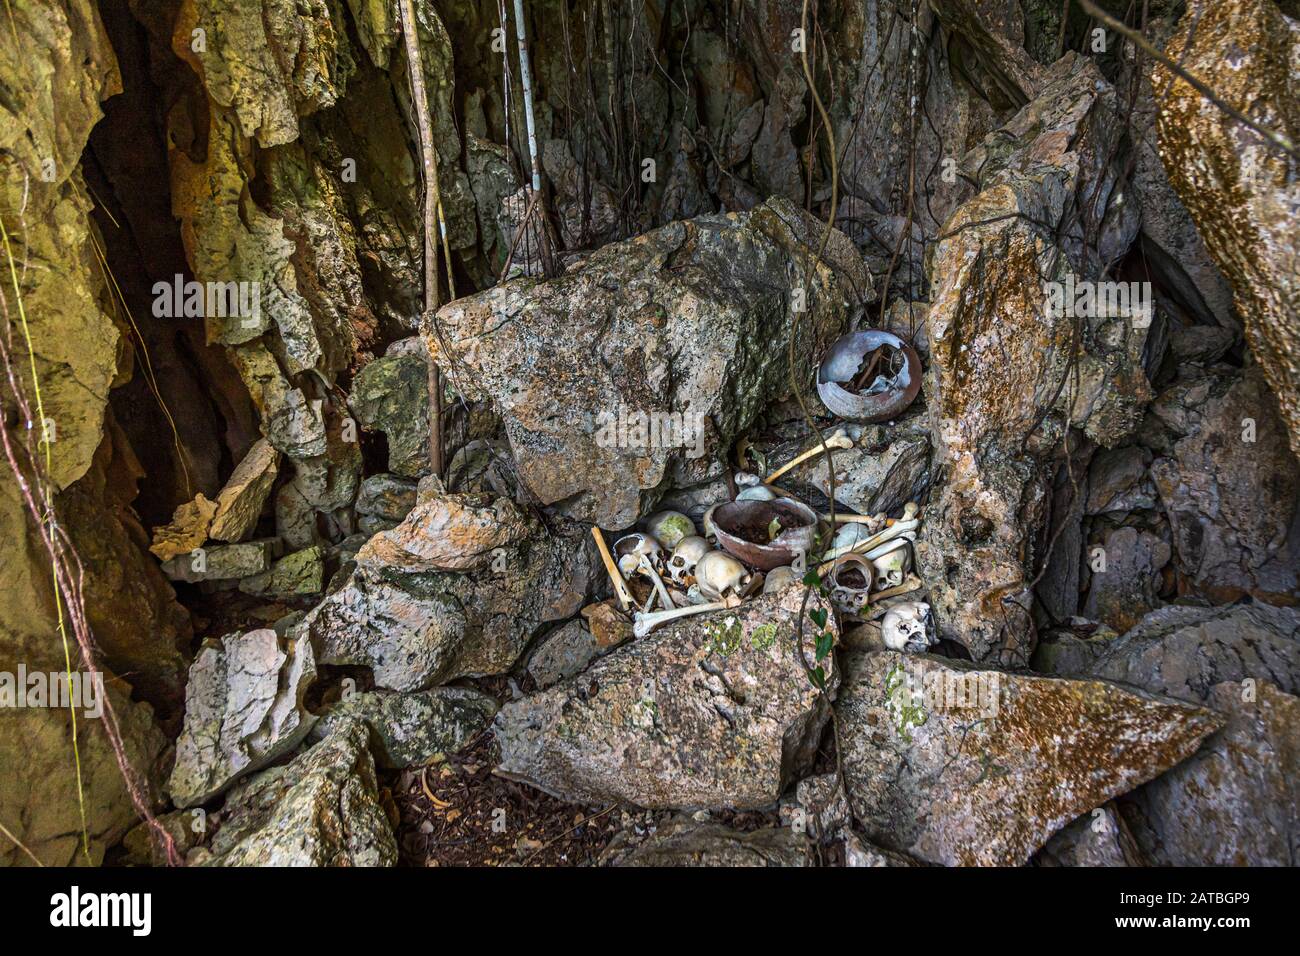 Schädel von Kannibalen, die in einer Höhle auf der Insel Pana Wara Wara in Papua-Neuguinea zurückgelassen wurden. Schädel und menschliche Knochen sind am kannibalen Kultplatz deutlich sichtbar Stockfoto